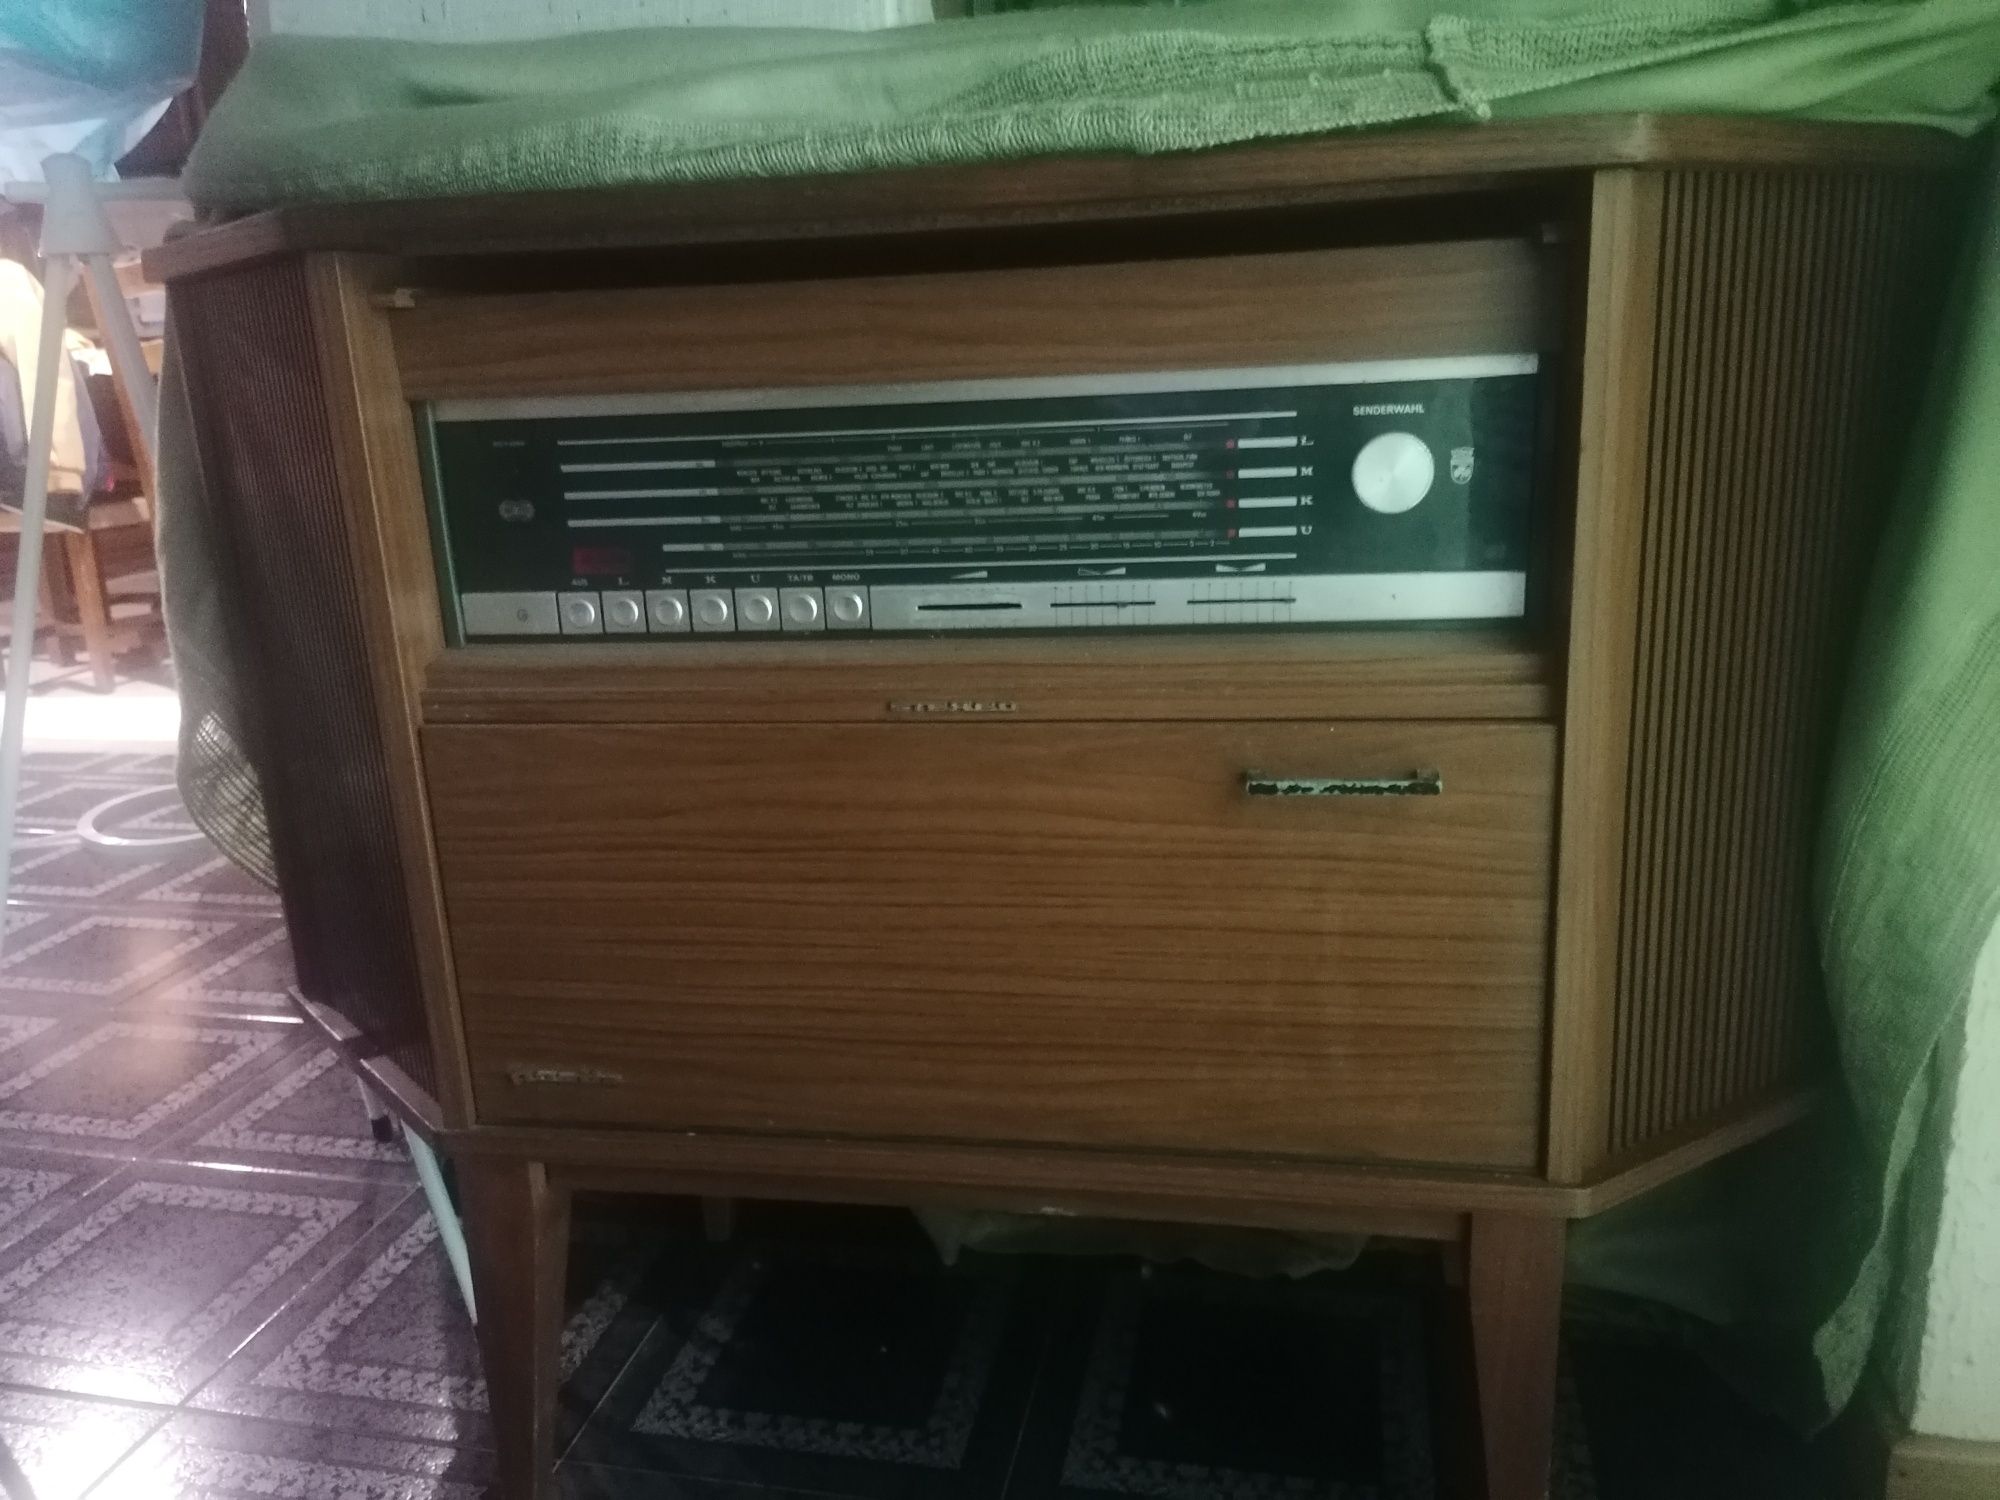 Vendo rádio antigo